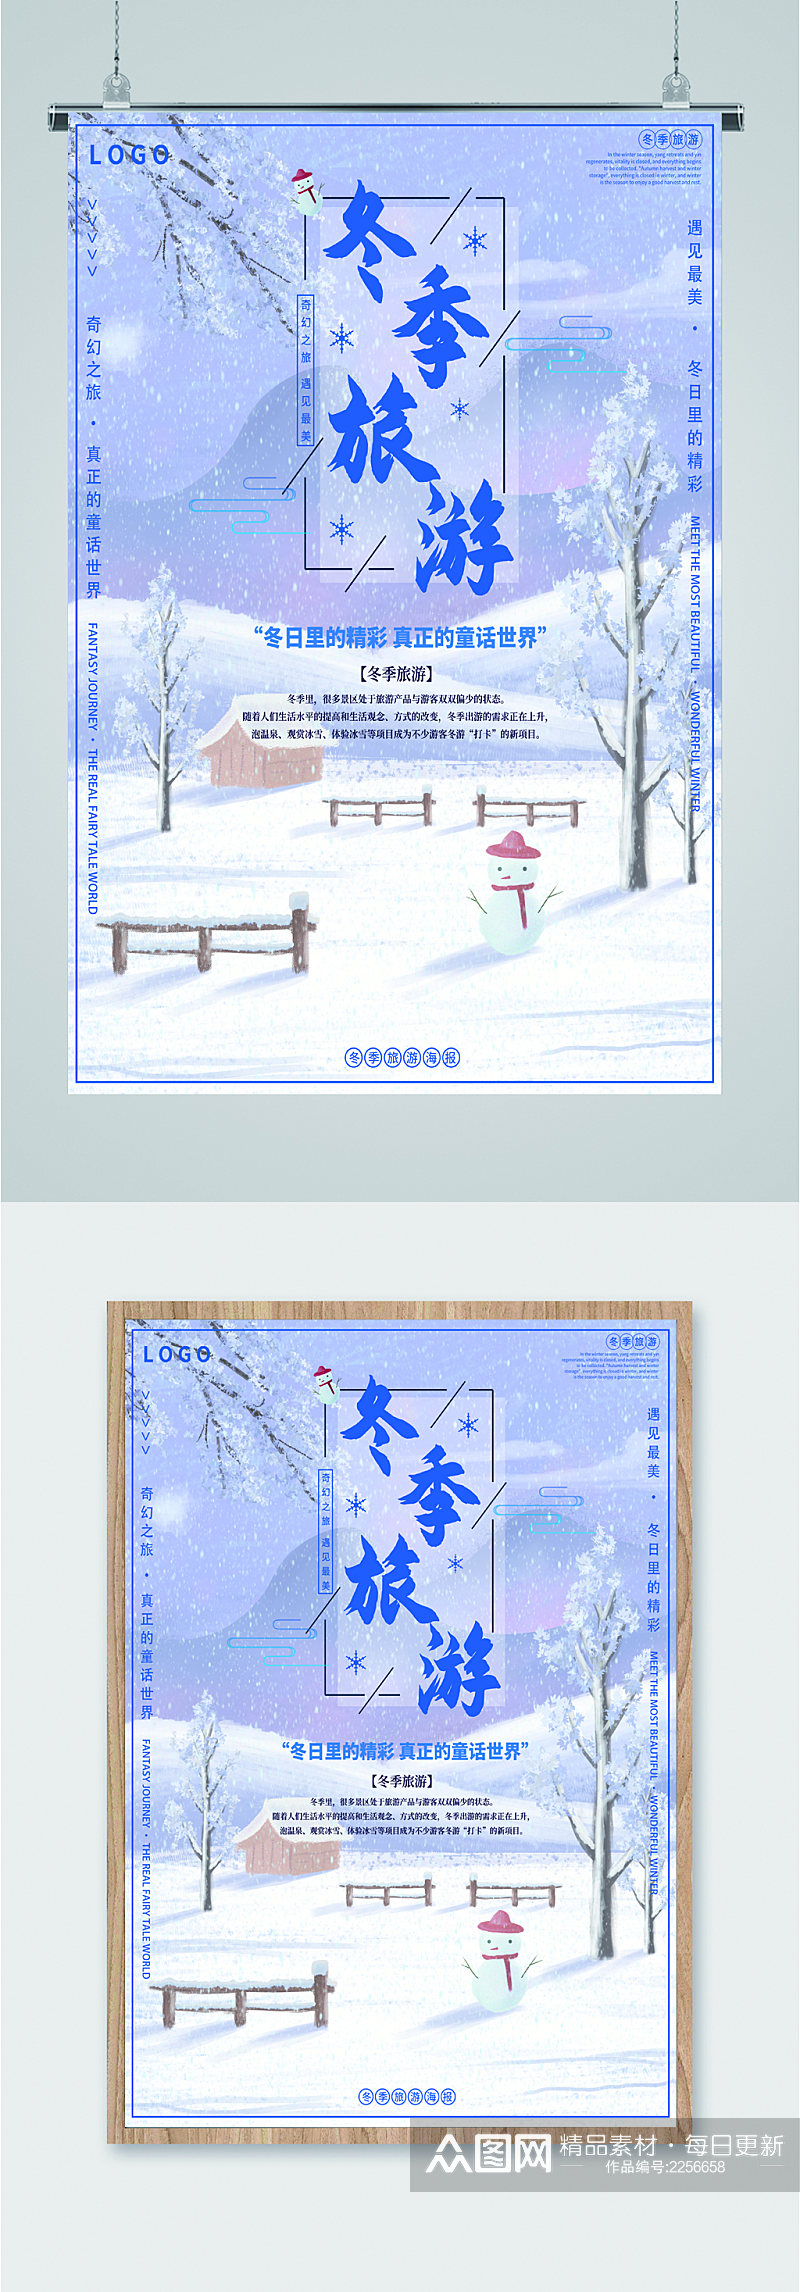 冬季旅游雪景海报素材